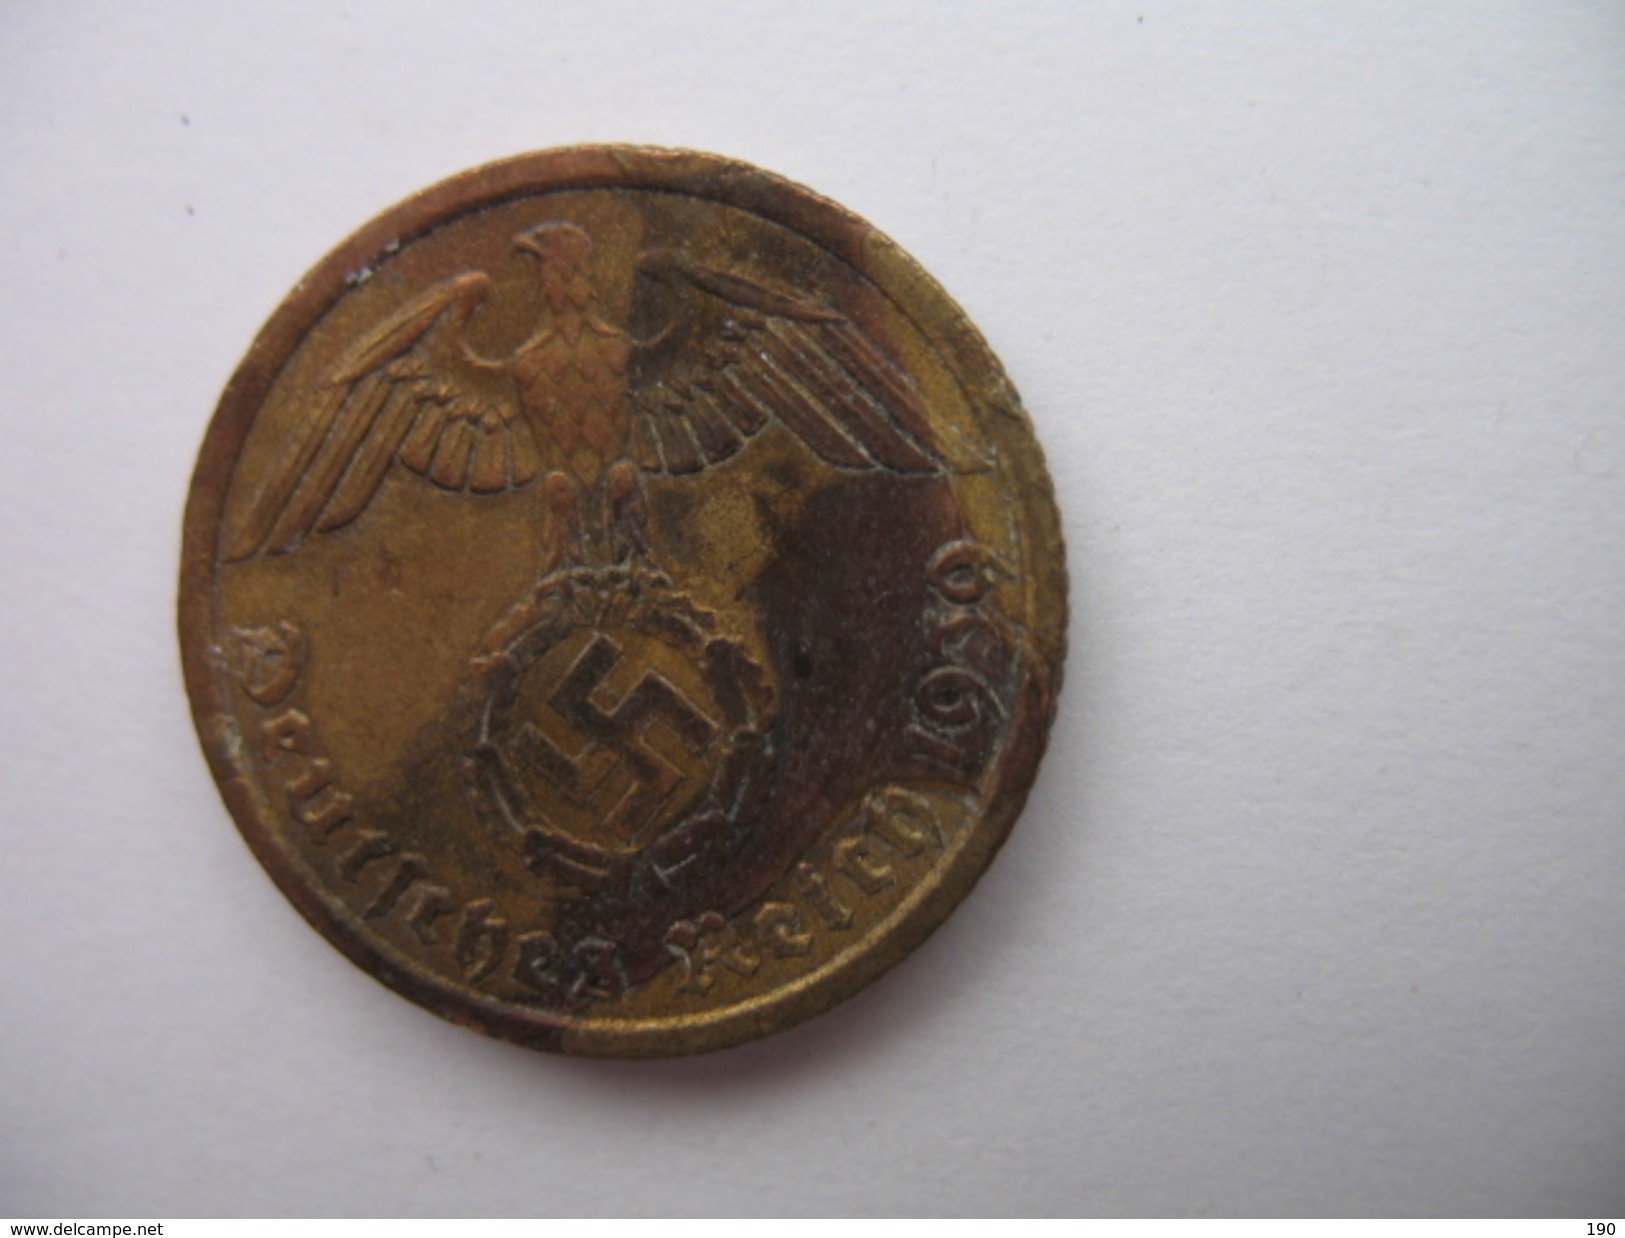 10 REICHSPFENNIG - 10 Reichspfennig